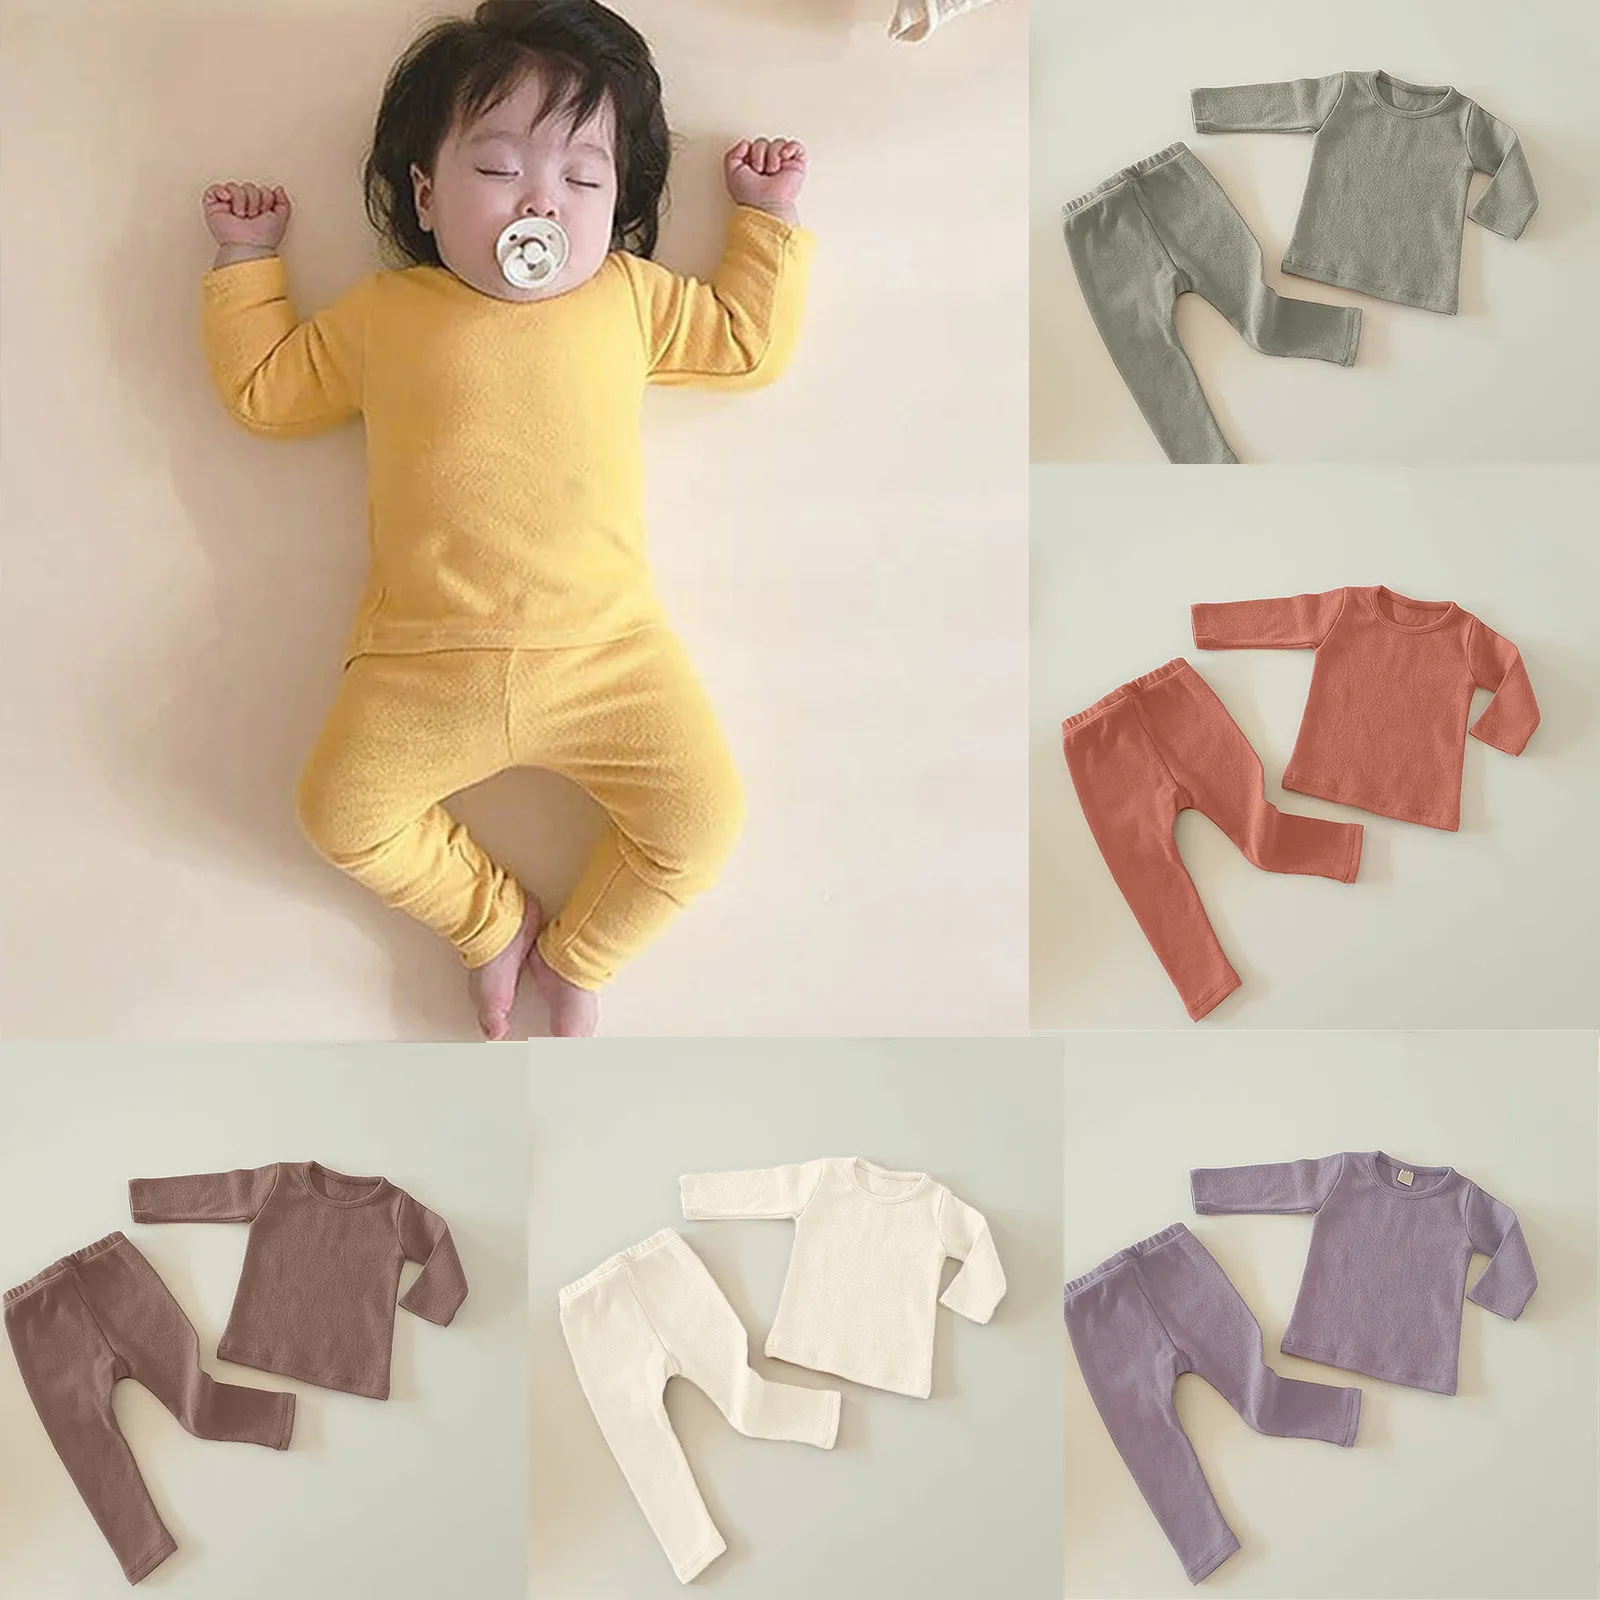 

Пижама с длинным рукавом для новорожденных, на возраст 0-24 месяца